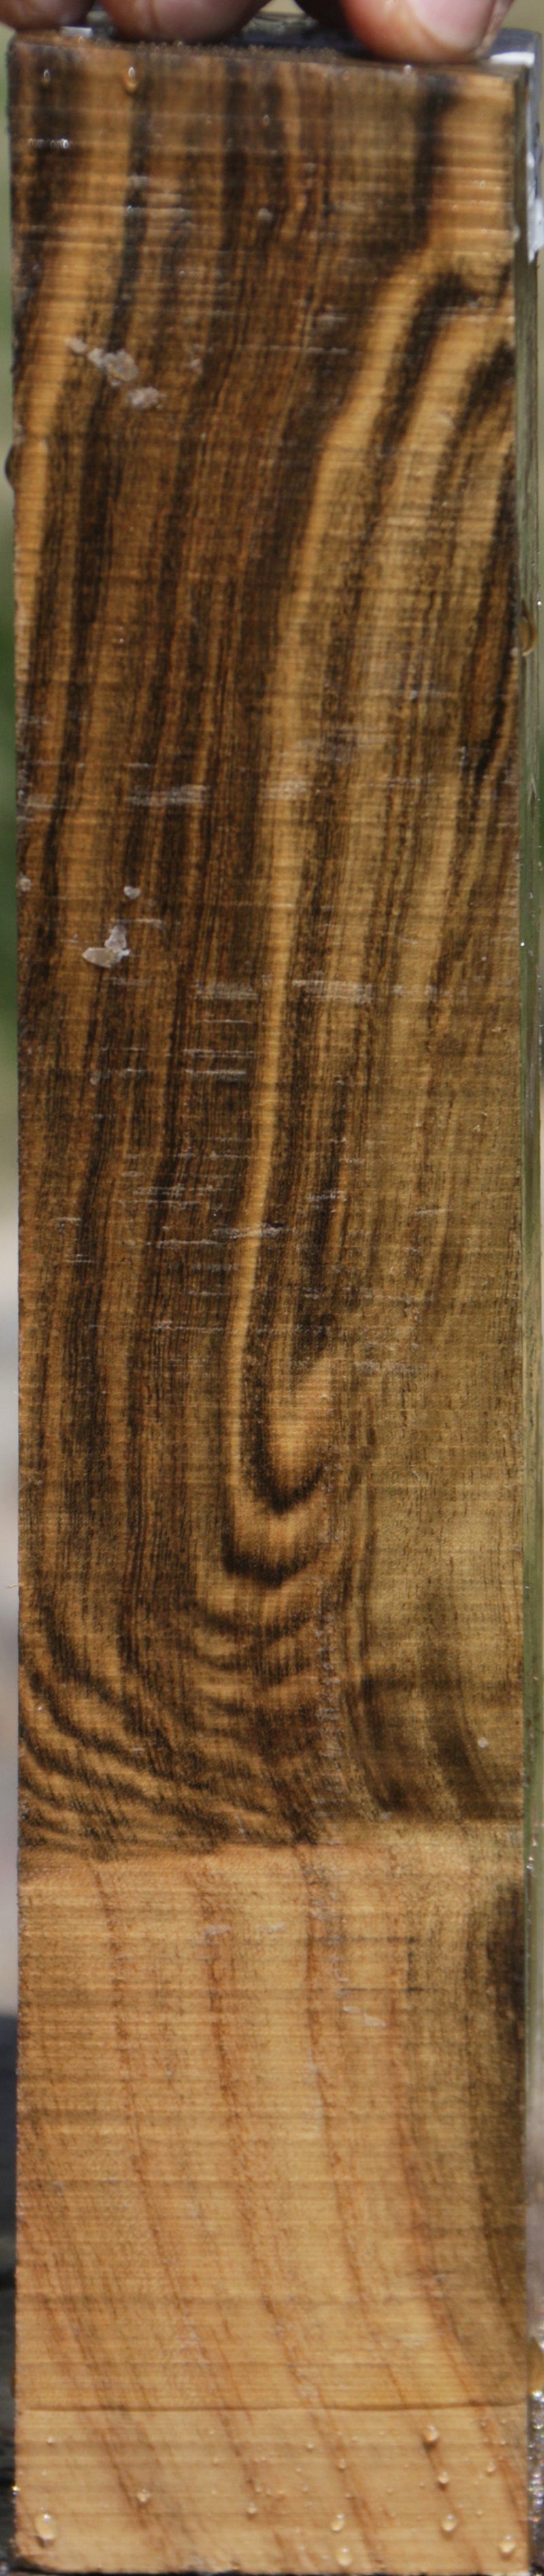 Pistachio Lumber